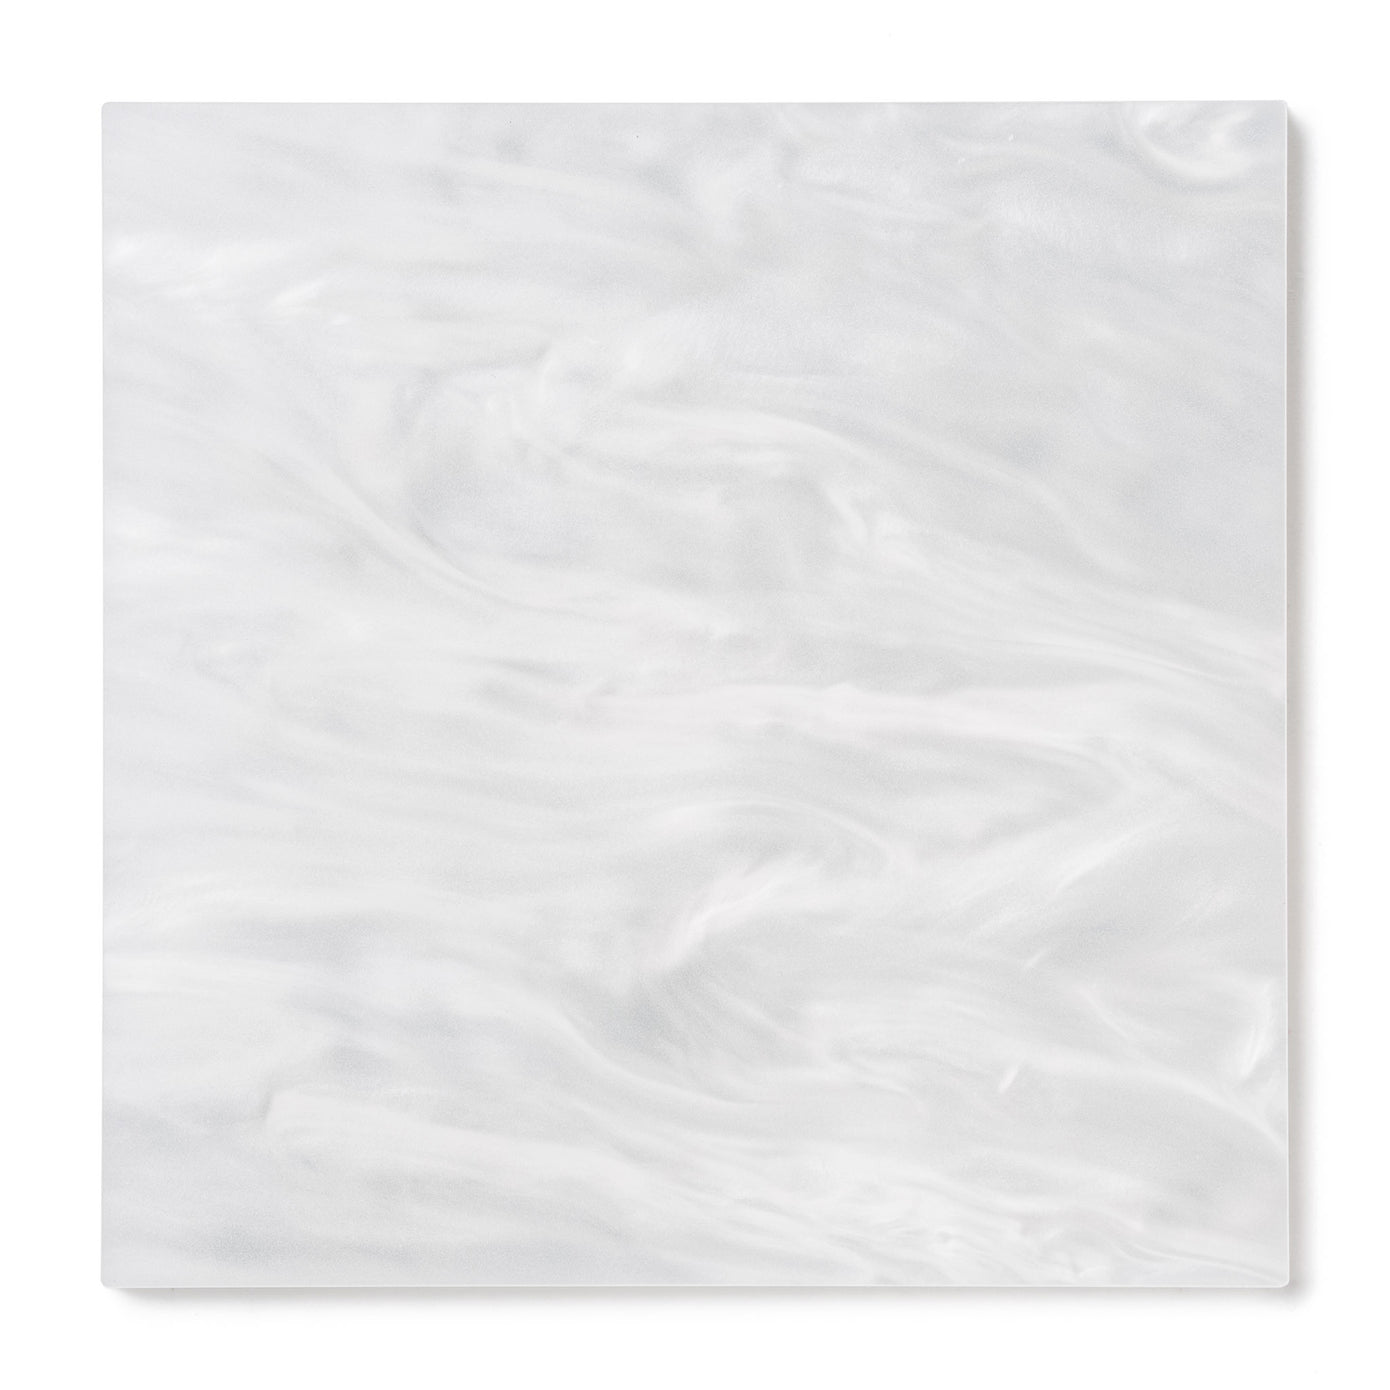 0.118 x 24 x 48, Acrylic Sheet, Textured , White